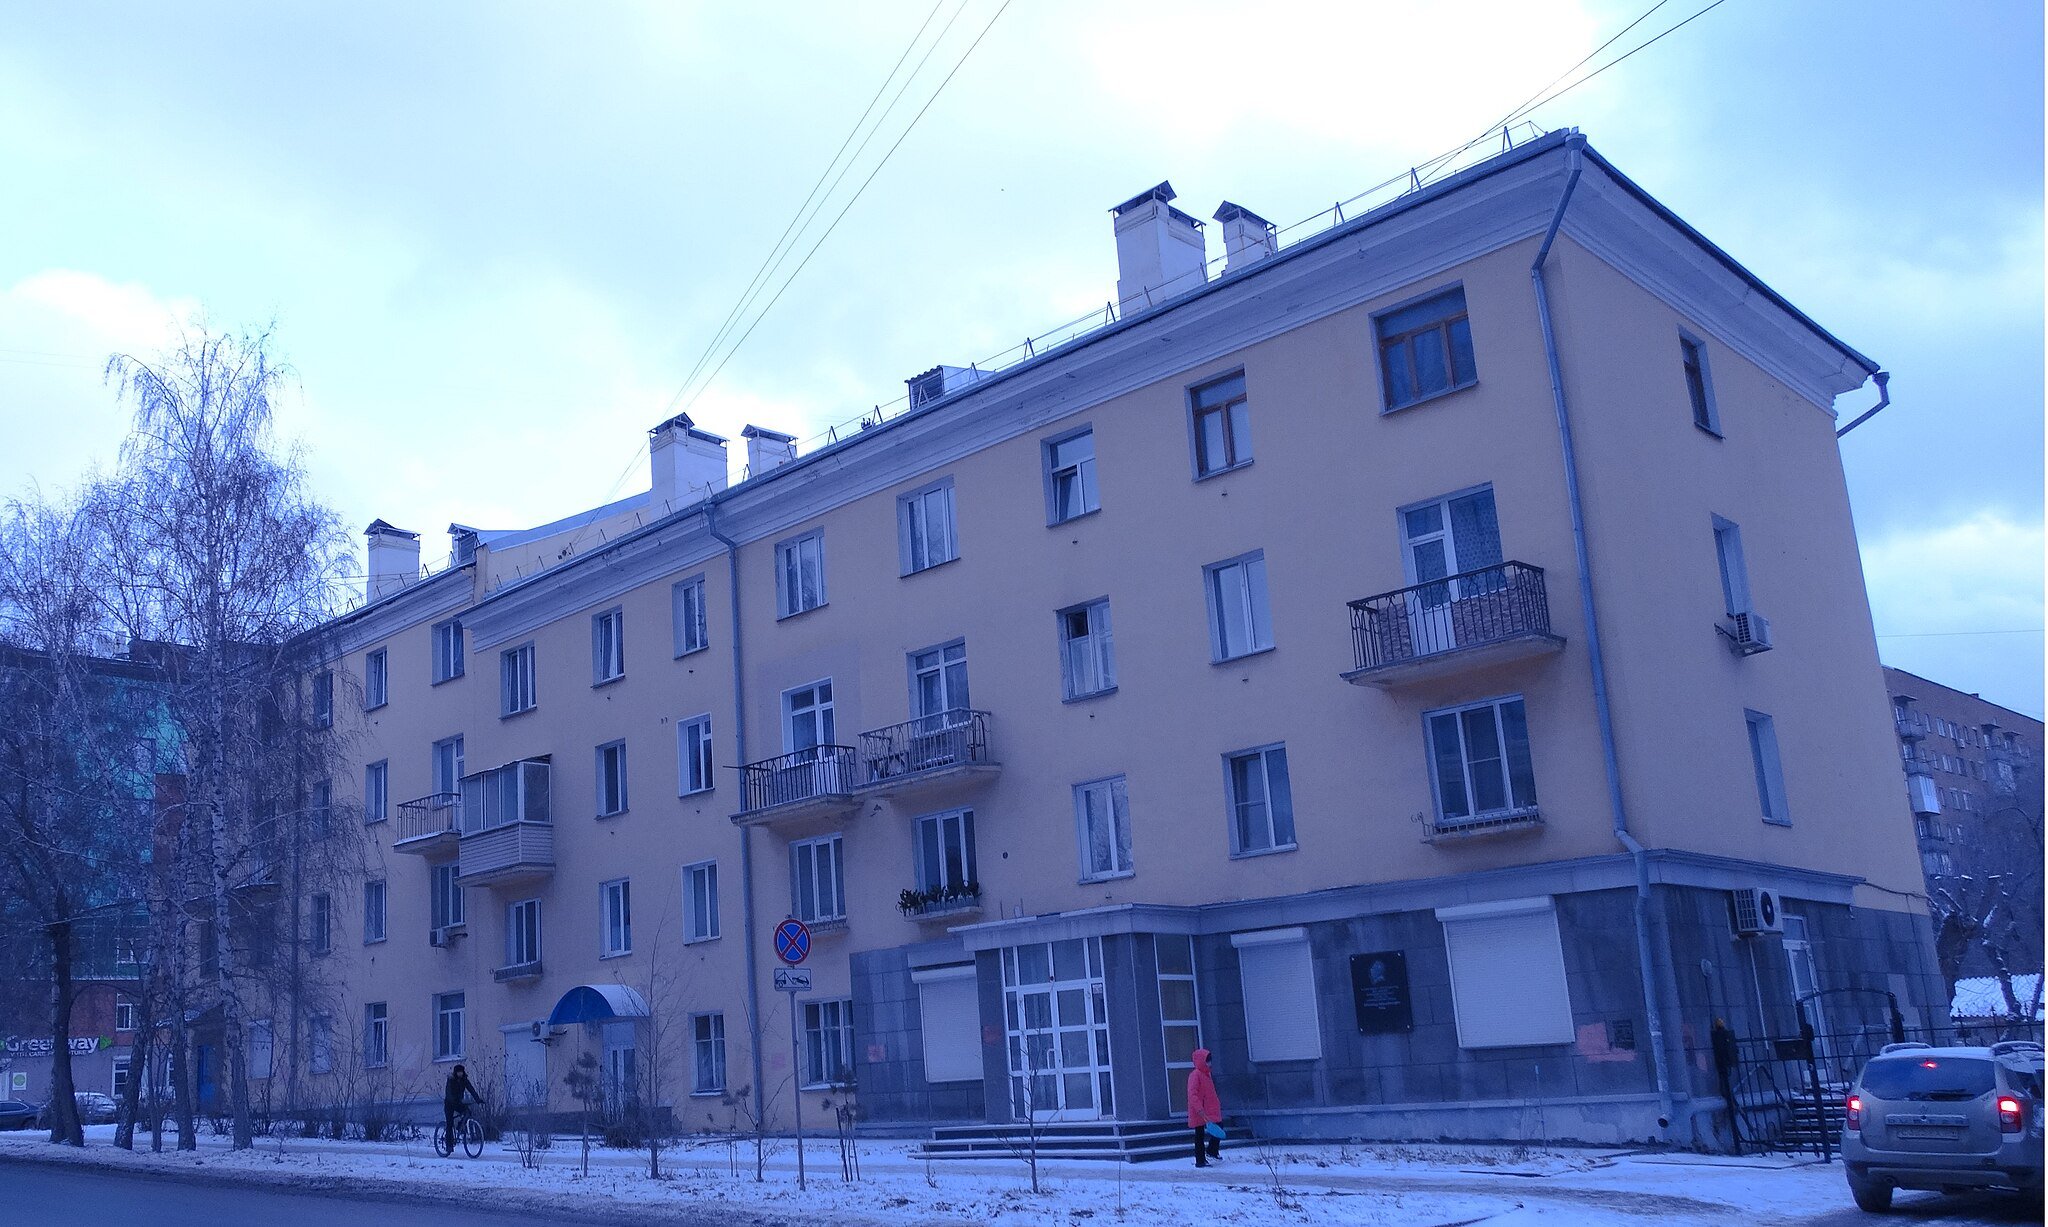 Дом в Новосибирске, в котором с 1970 по 2007 гг. жил А. М. Кац